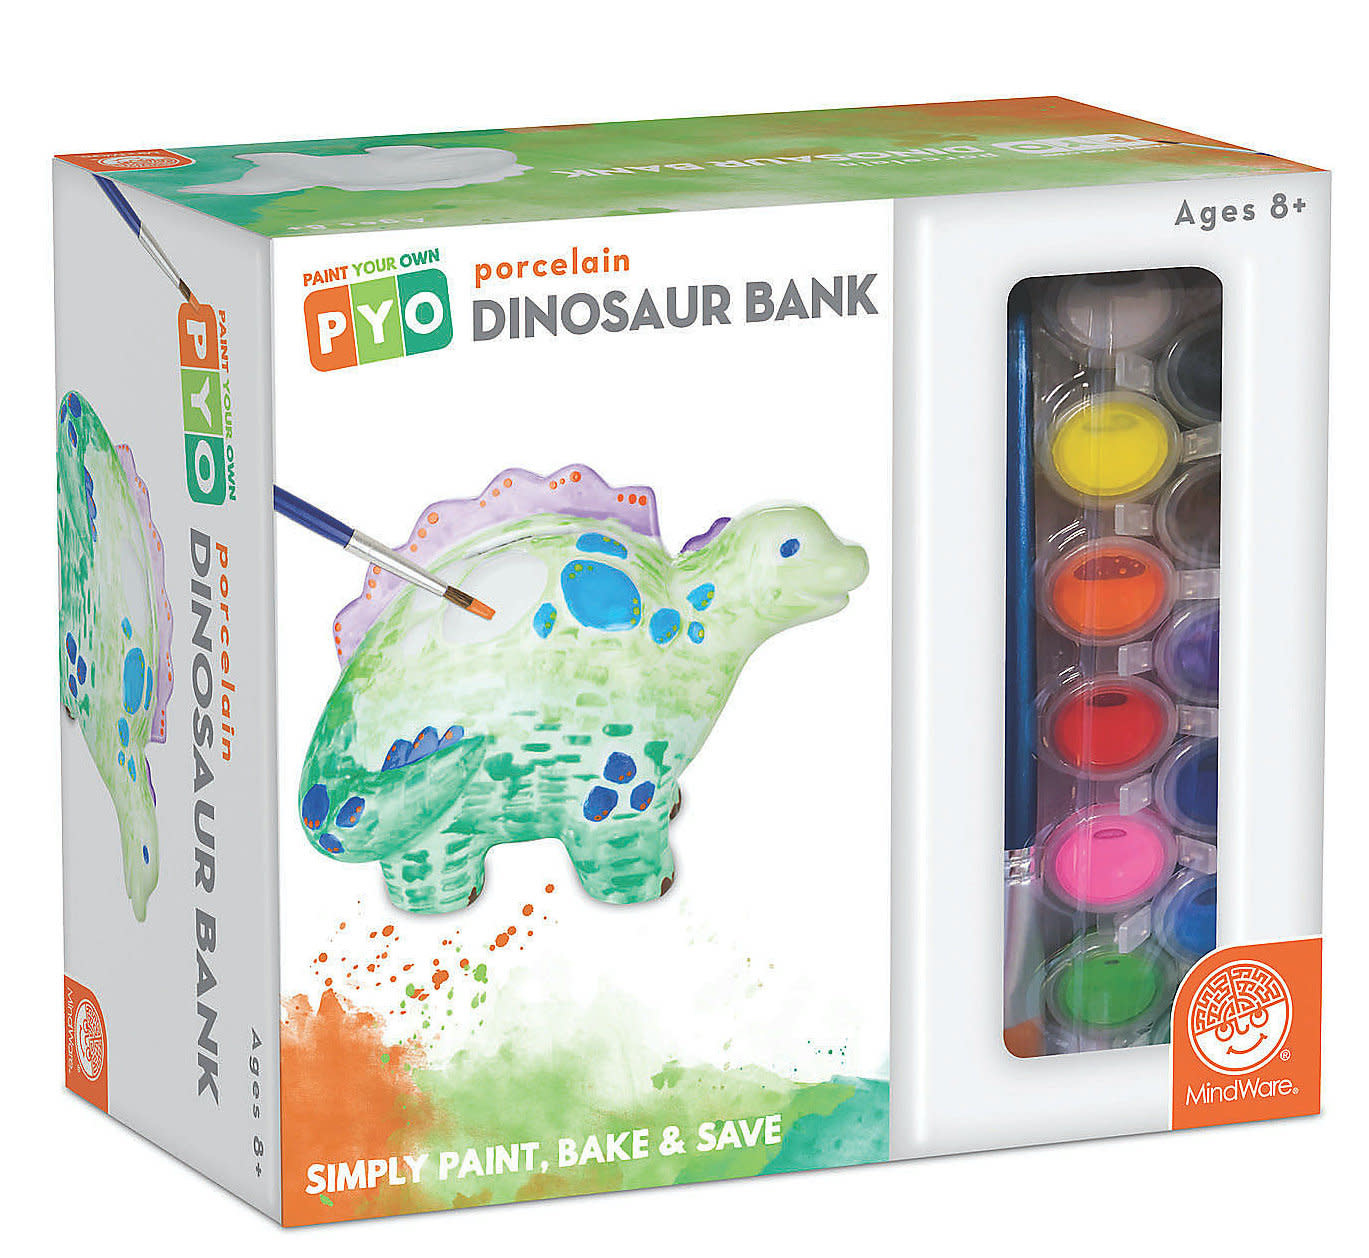 Paint Your Own Porcelain Dinosaur Bank